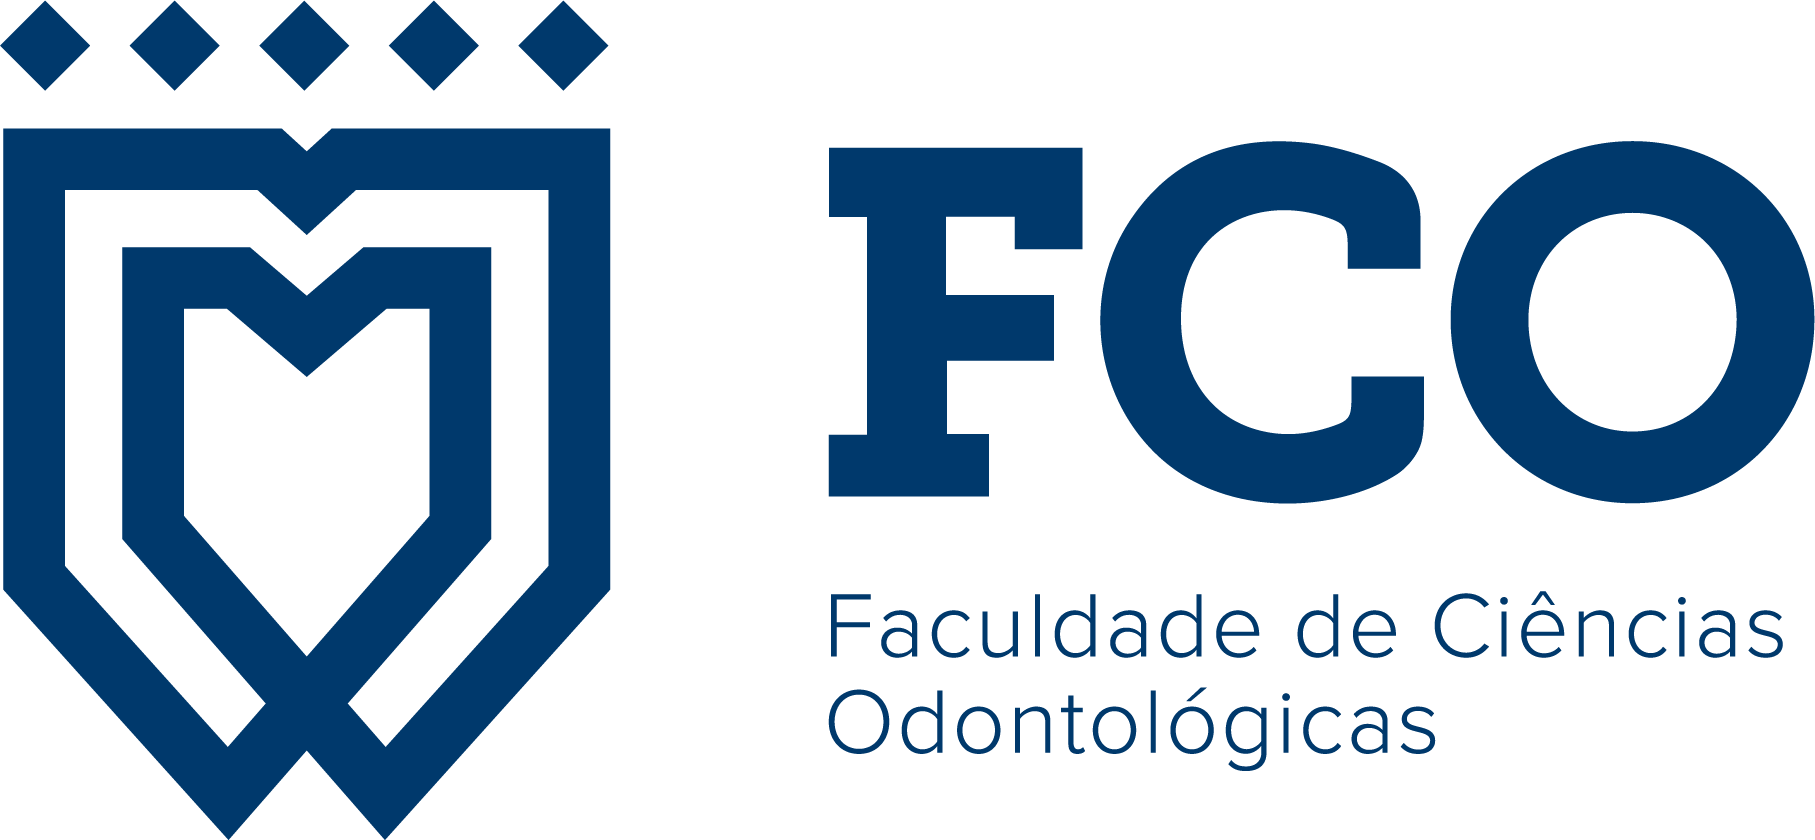 Faculdade de Ciências Odontológicas - FCO